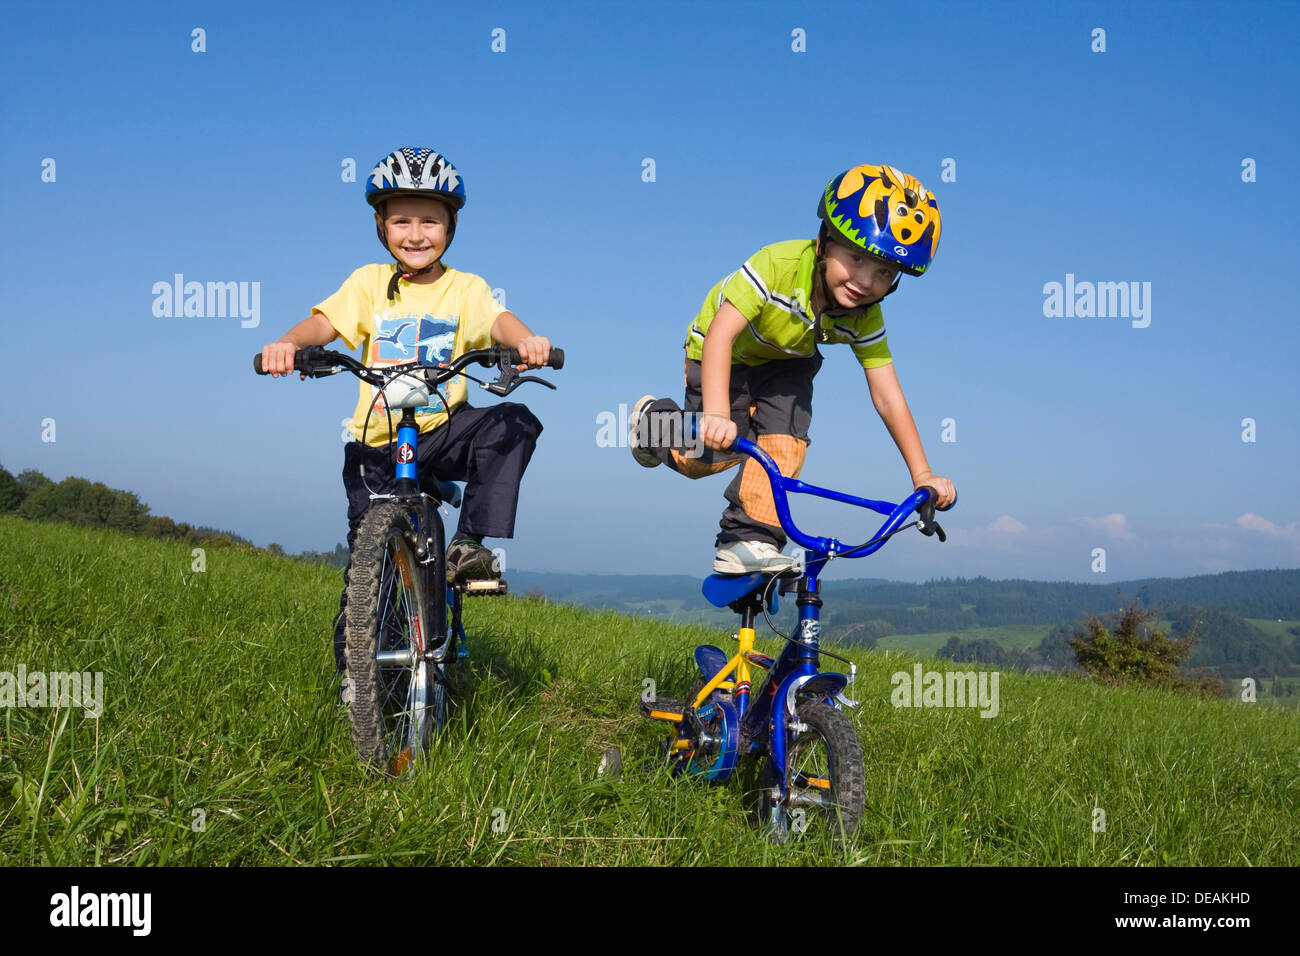 Les garçons, 6 et 4 ans, sur des vélos Banque D'Images